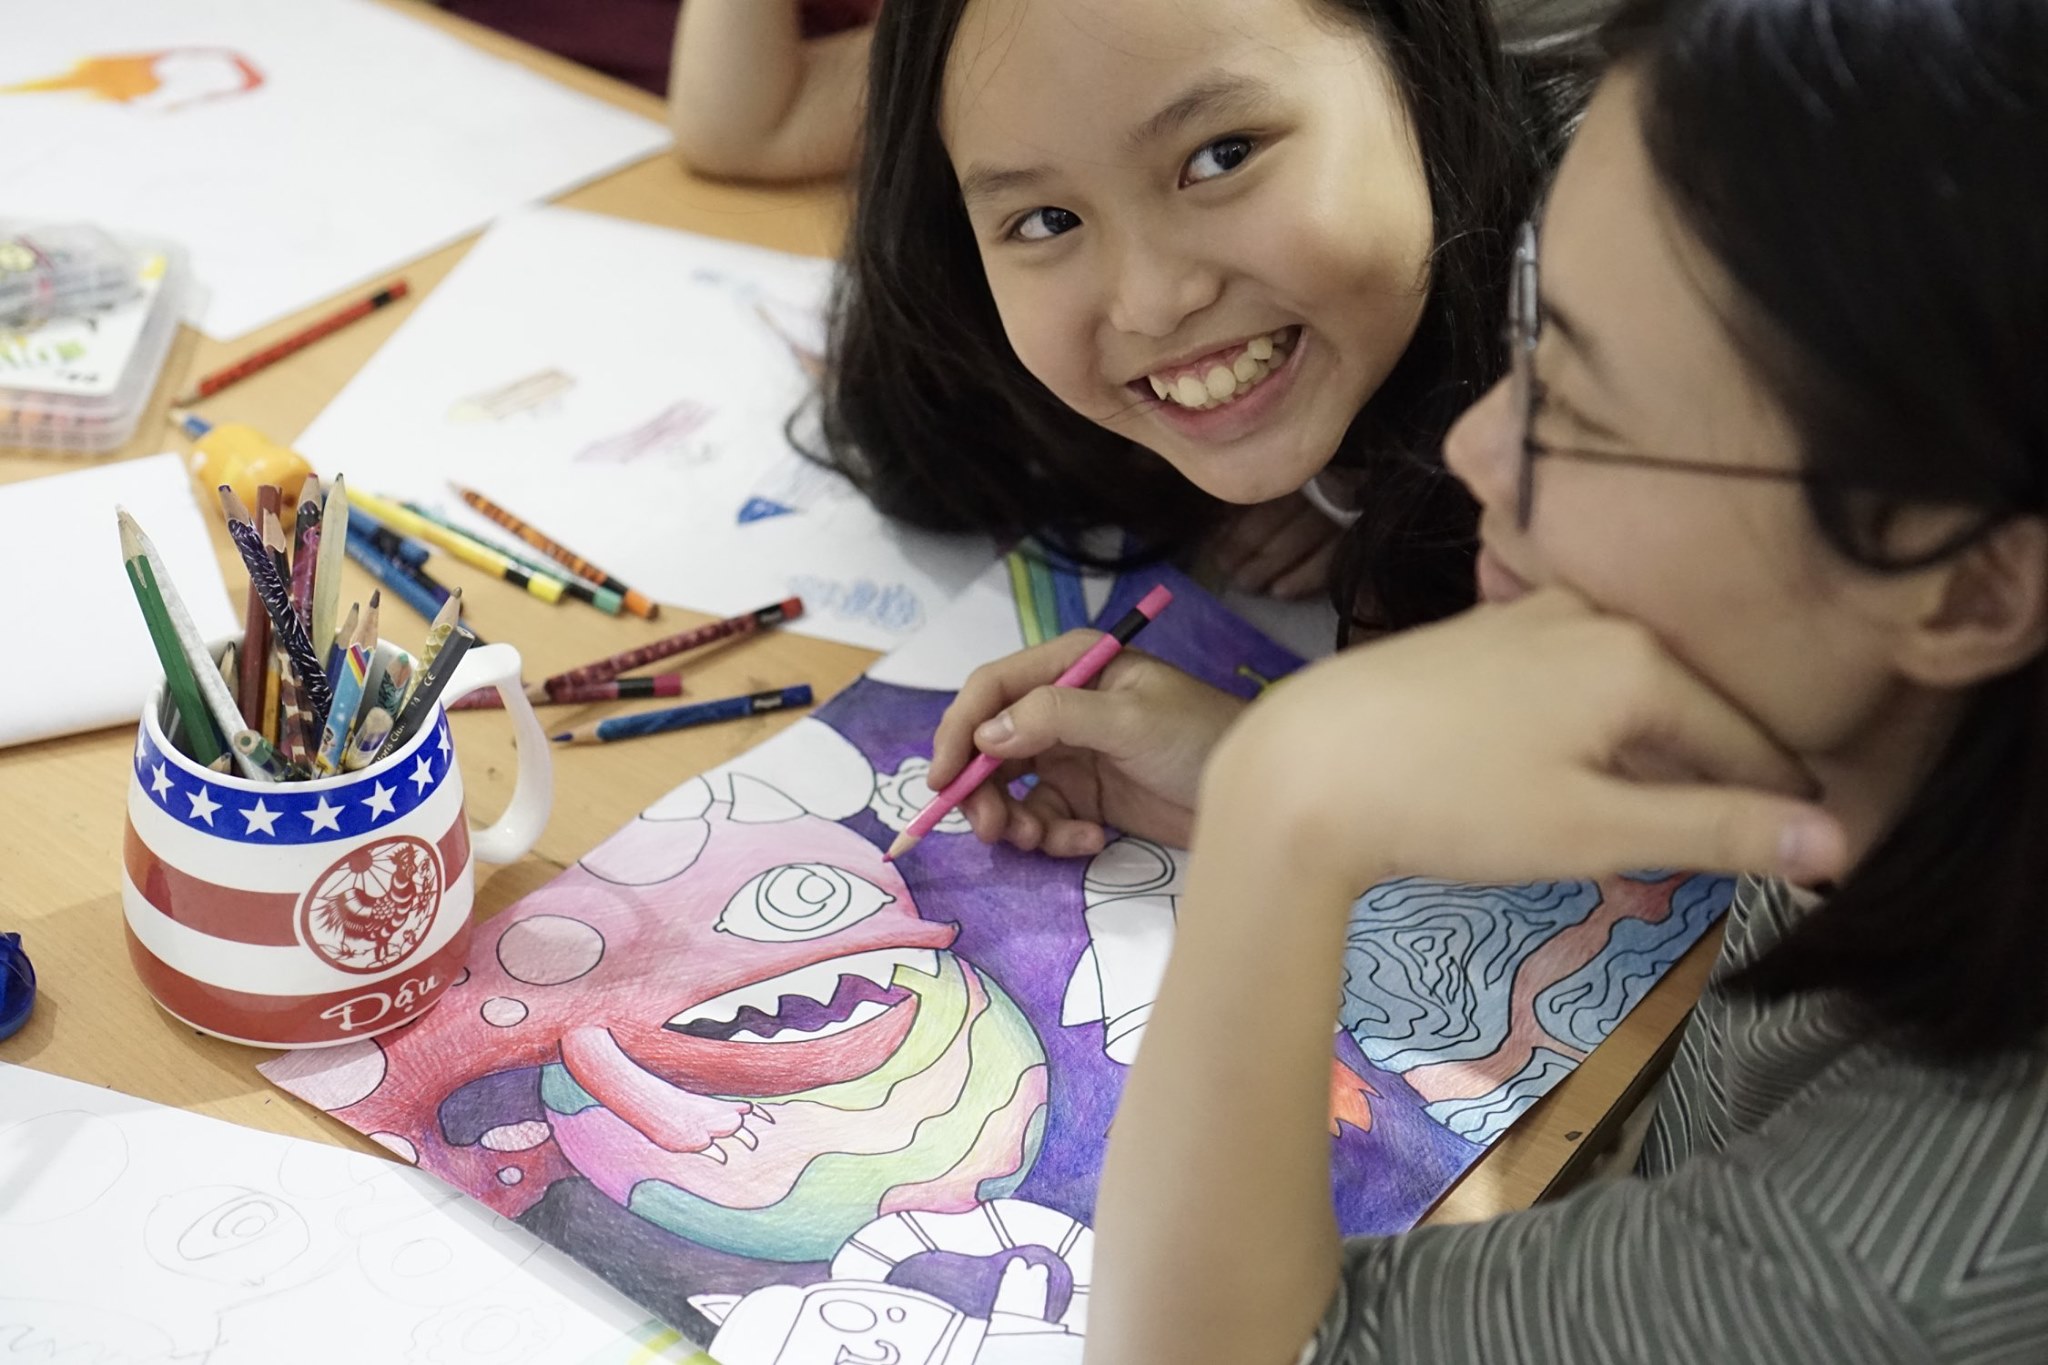 Top 9 Địa chỉ học vẽ cho trẻ tốt nhất hiện nay tại TP HCM  toplistvn